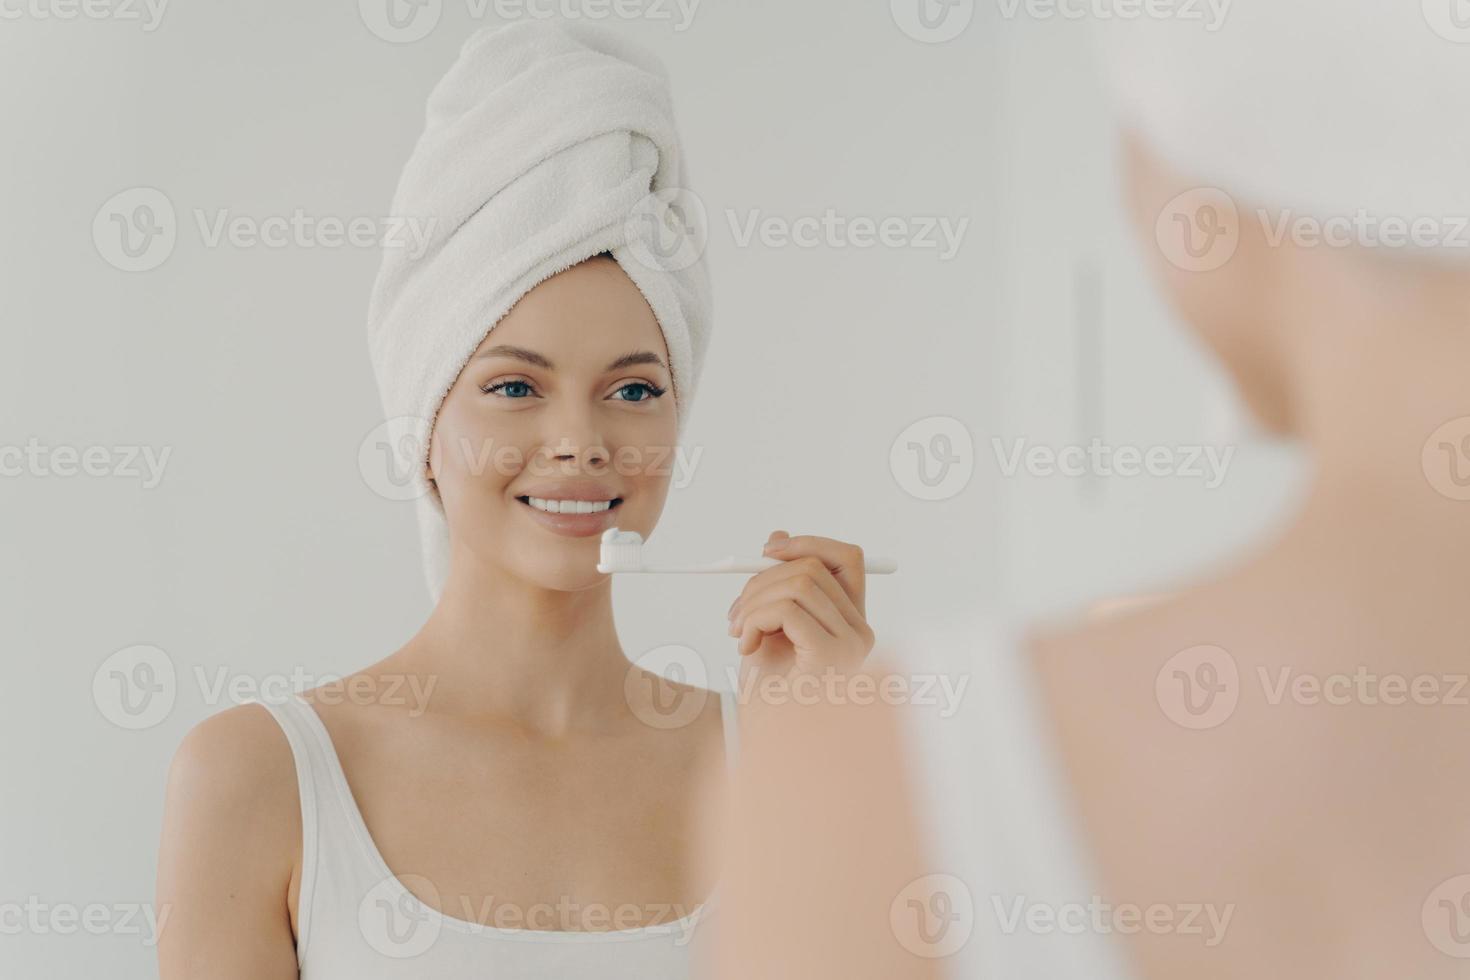 Gesunde schöne Frau mit Handtuch auf dem Kopf nach dem Duschen, die ein zahniges Lächeln hat, während sie sich sanft die Zähne putzt foto